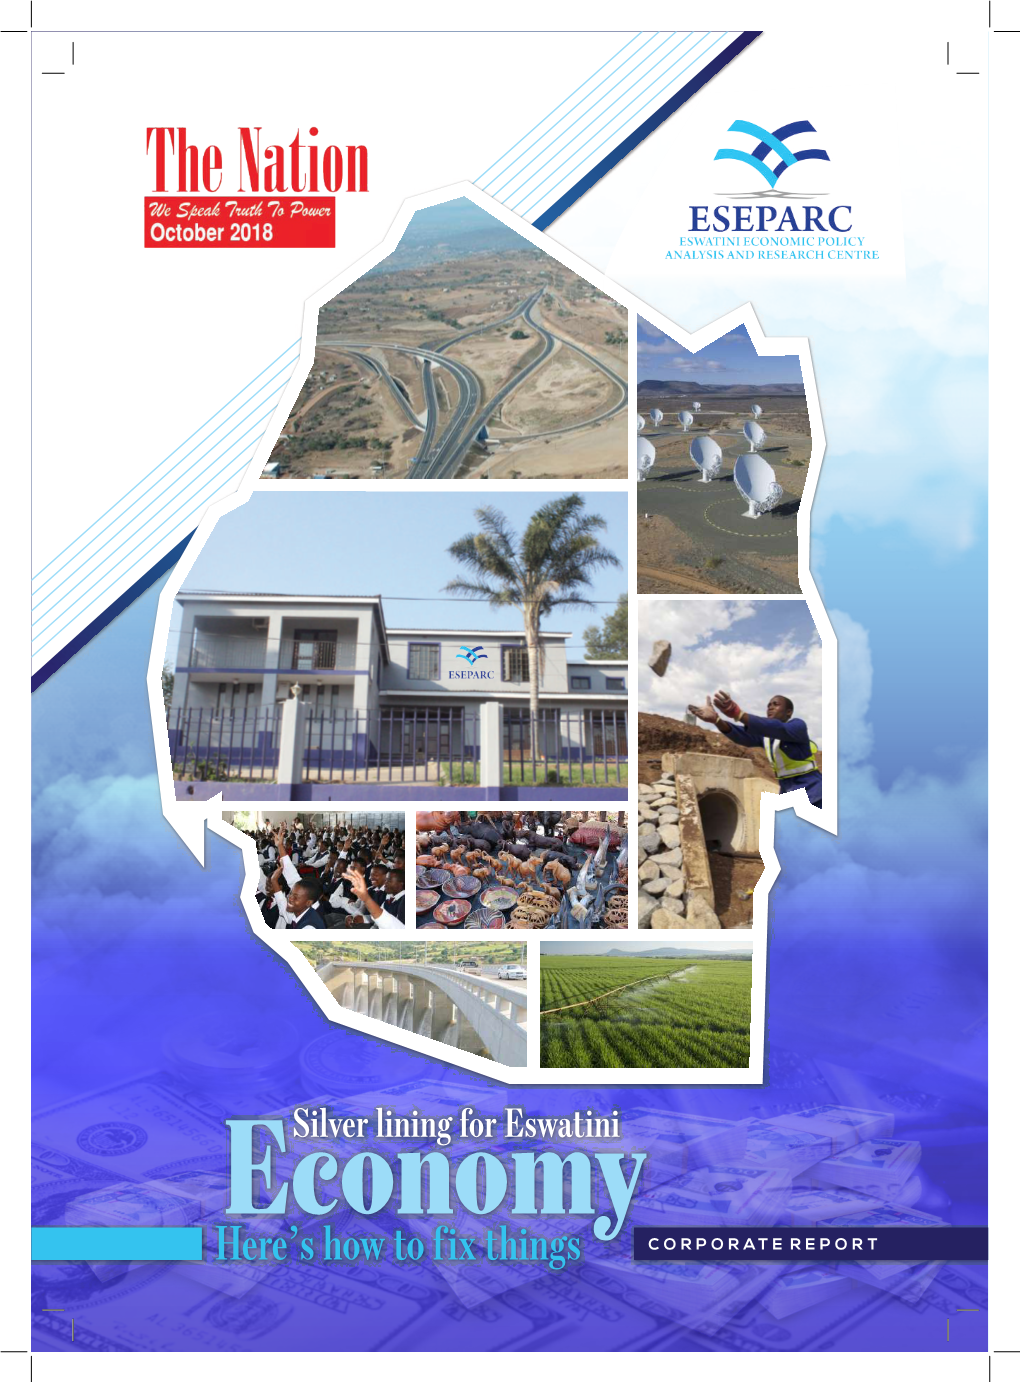 ESEPARC Corporate Report